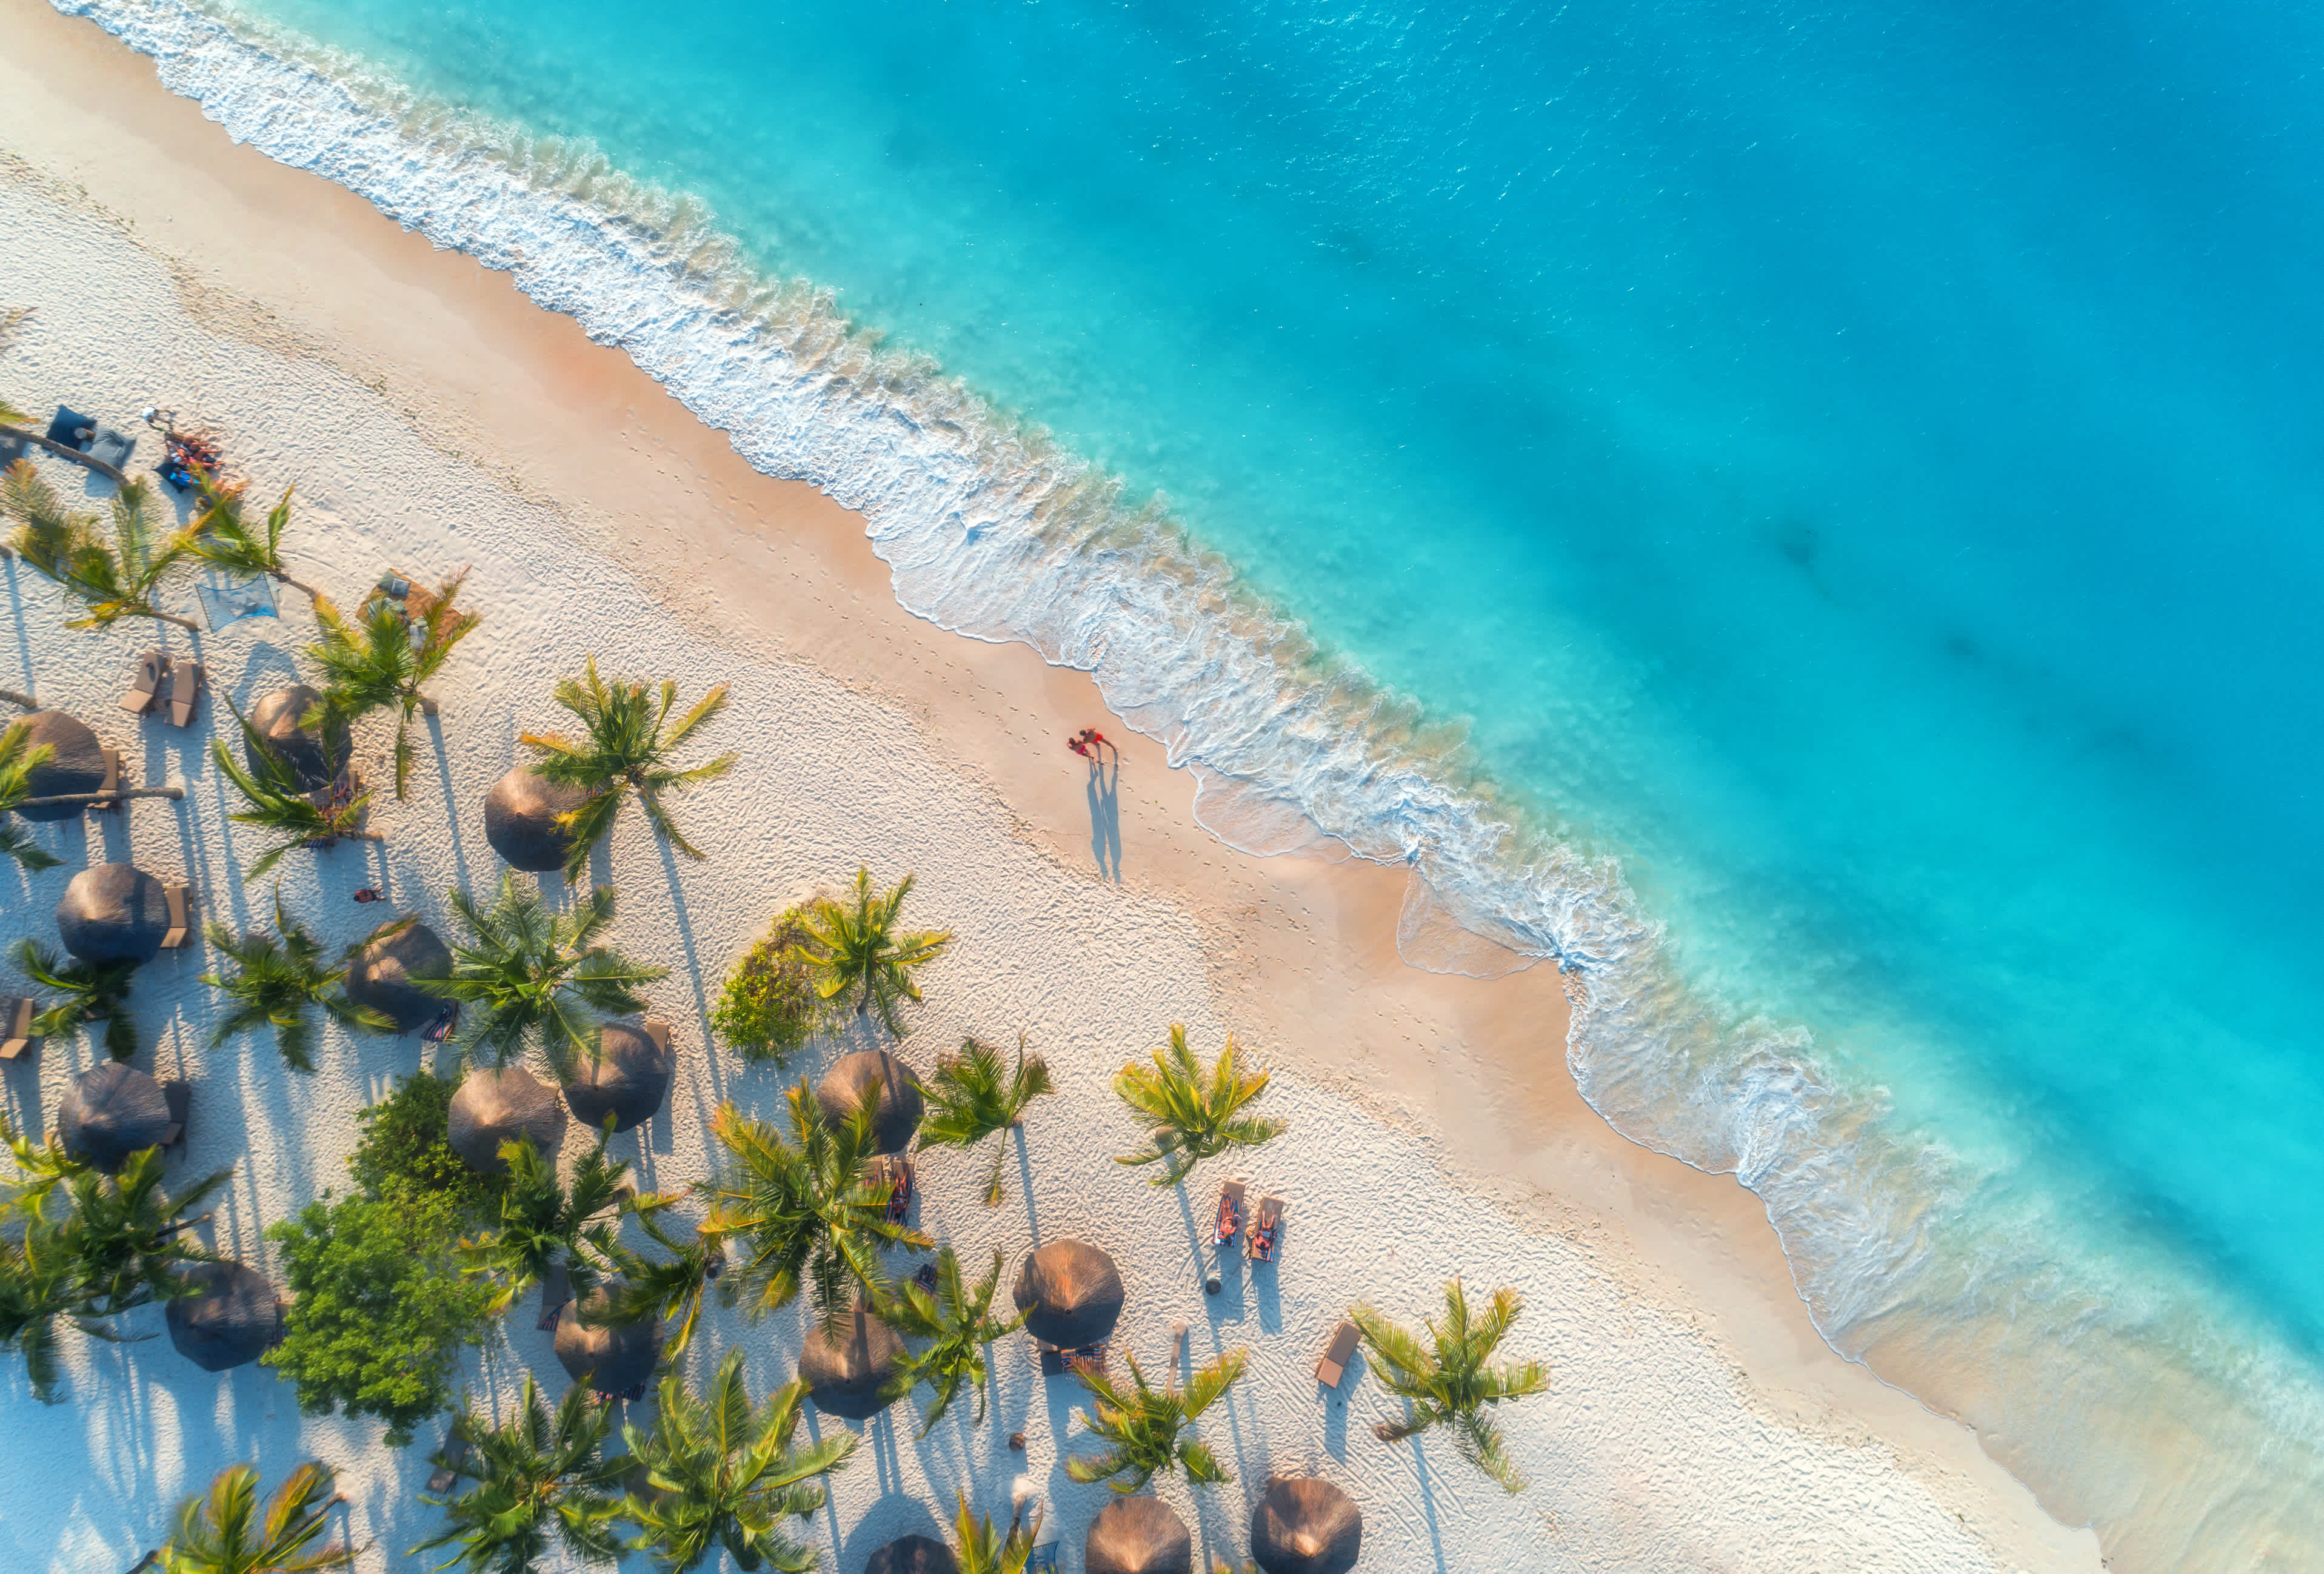 Vue aérienne de parasols, palmiers sur une plage de sable, personnes, mer bleue avec vagues au coucher du soleil